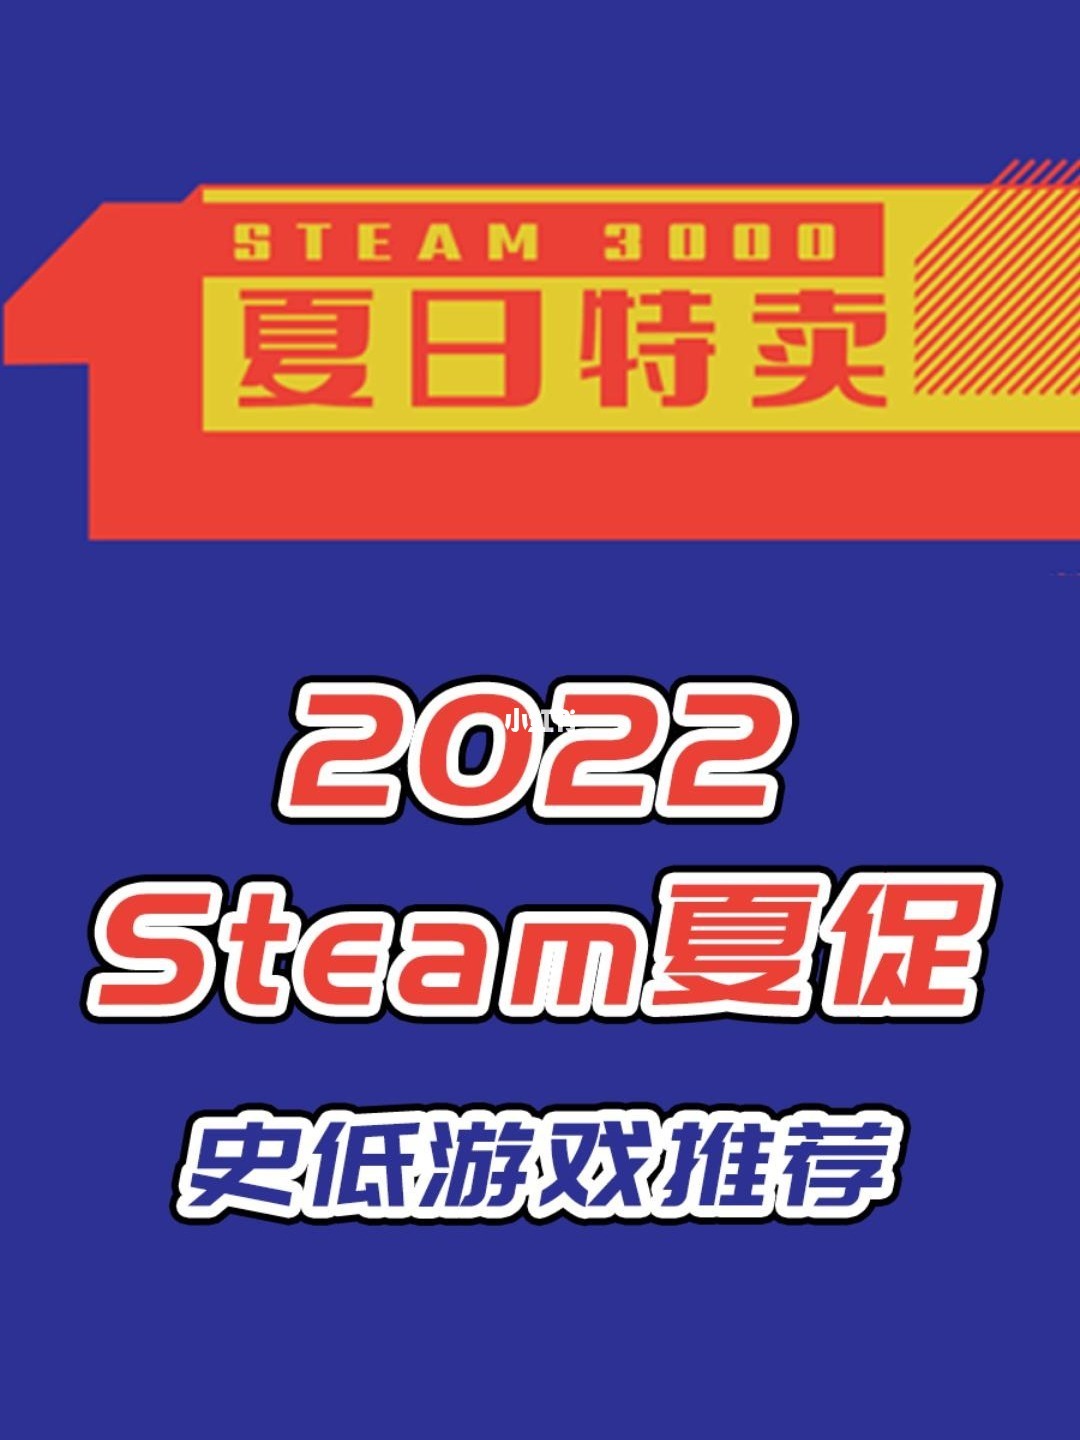 关于steam夏促游戏列表的信息